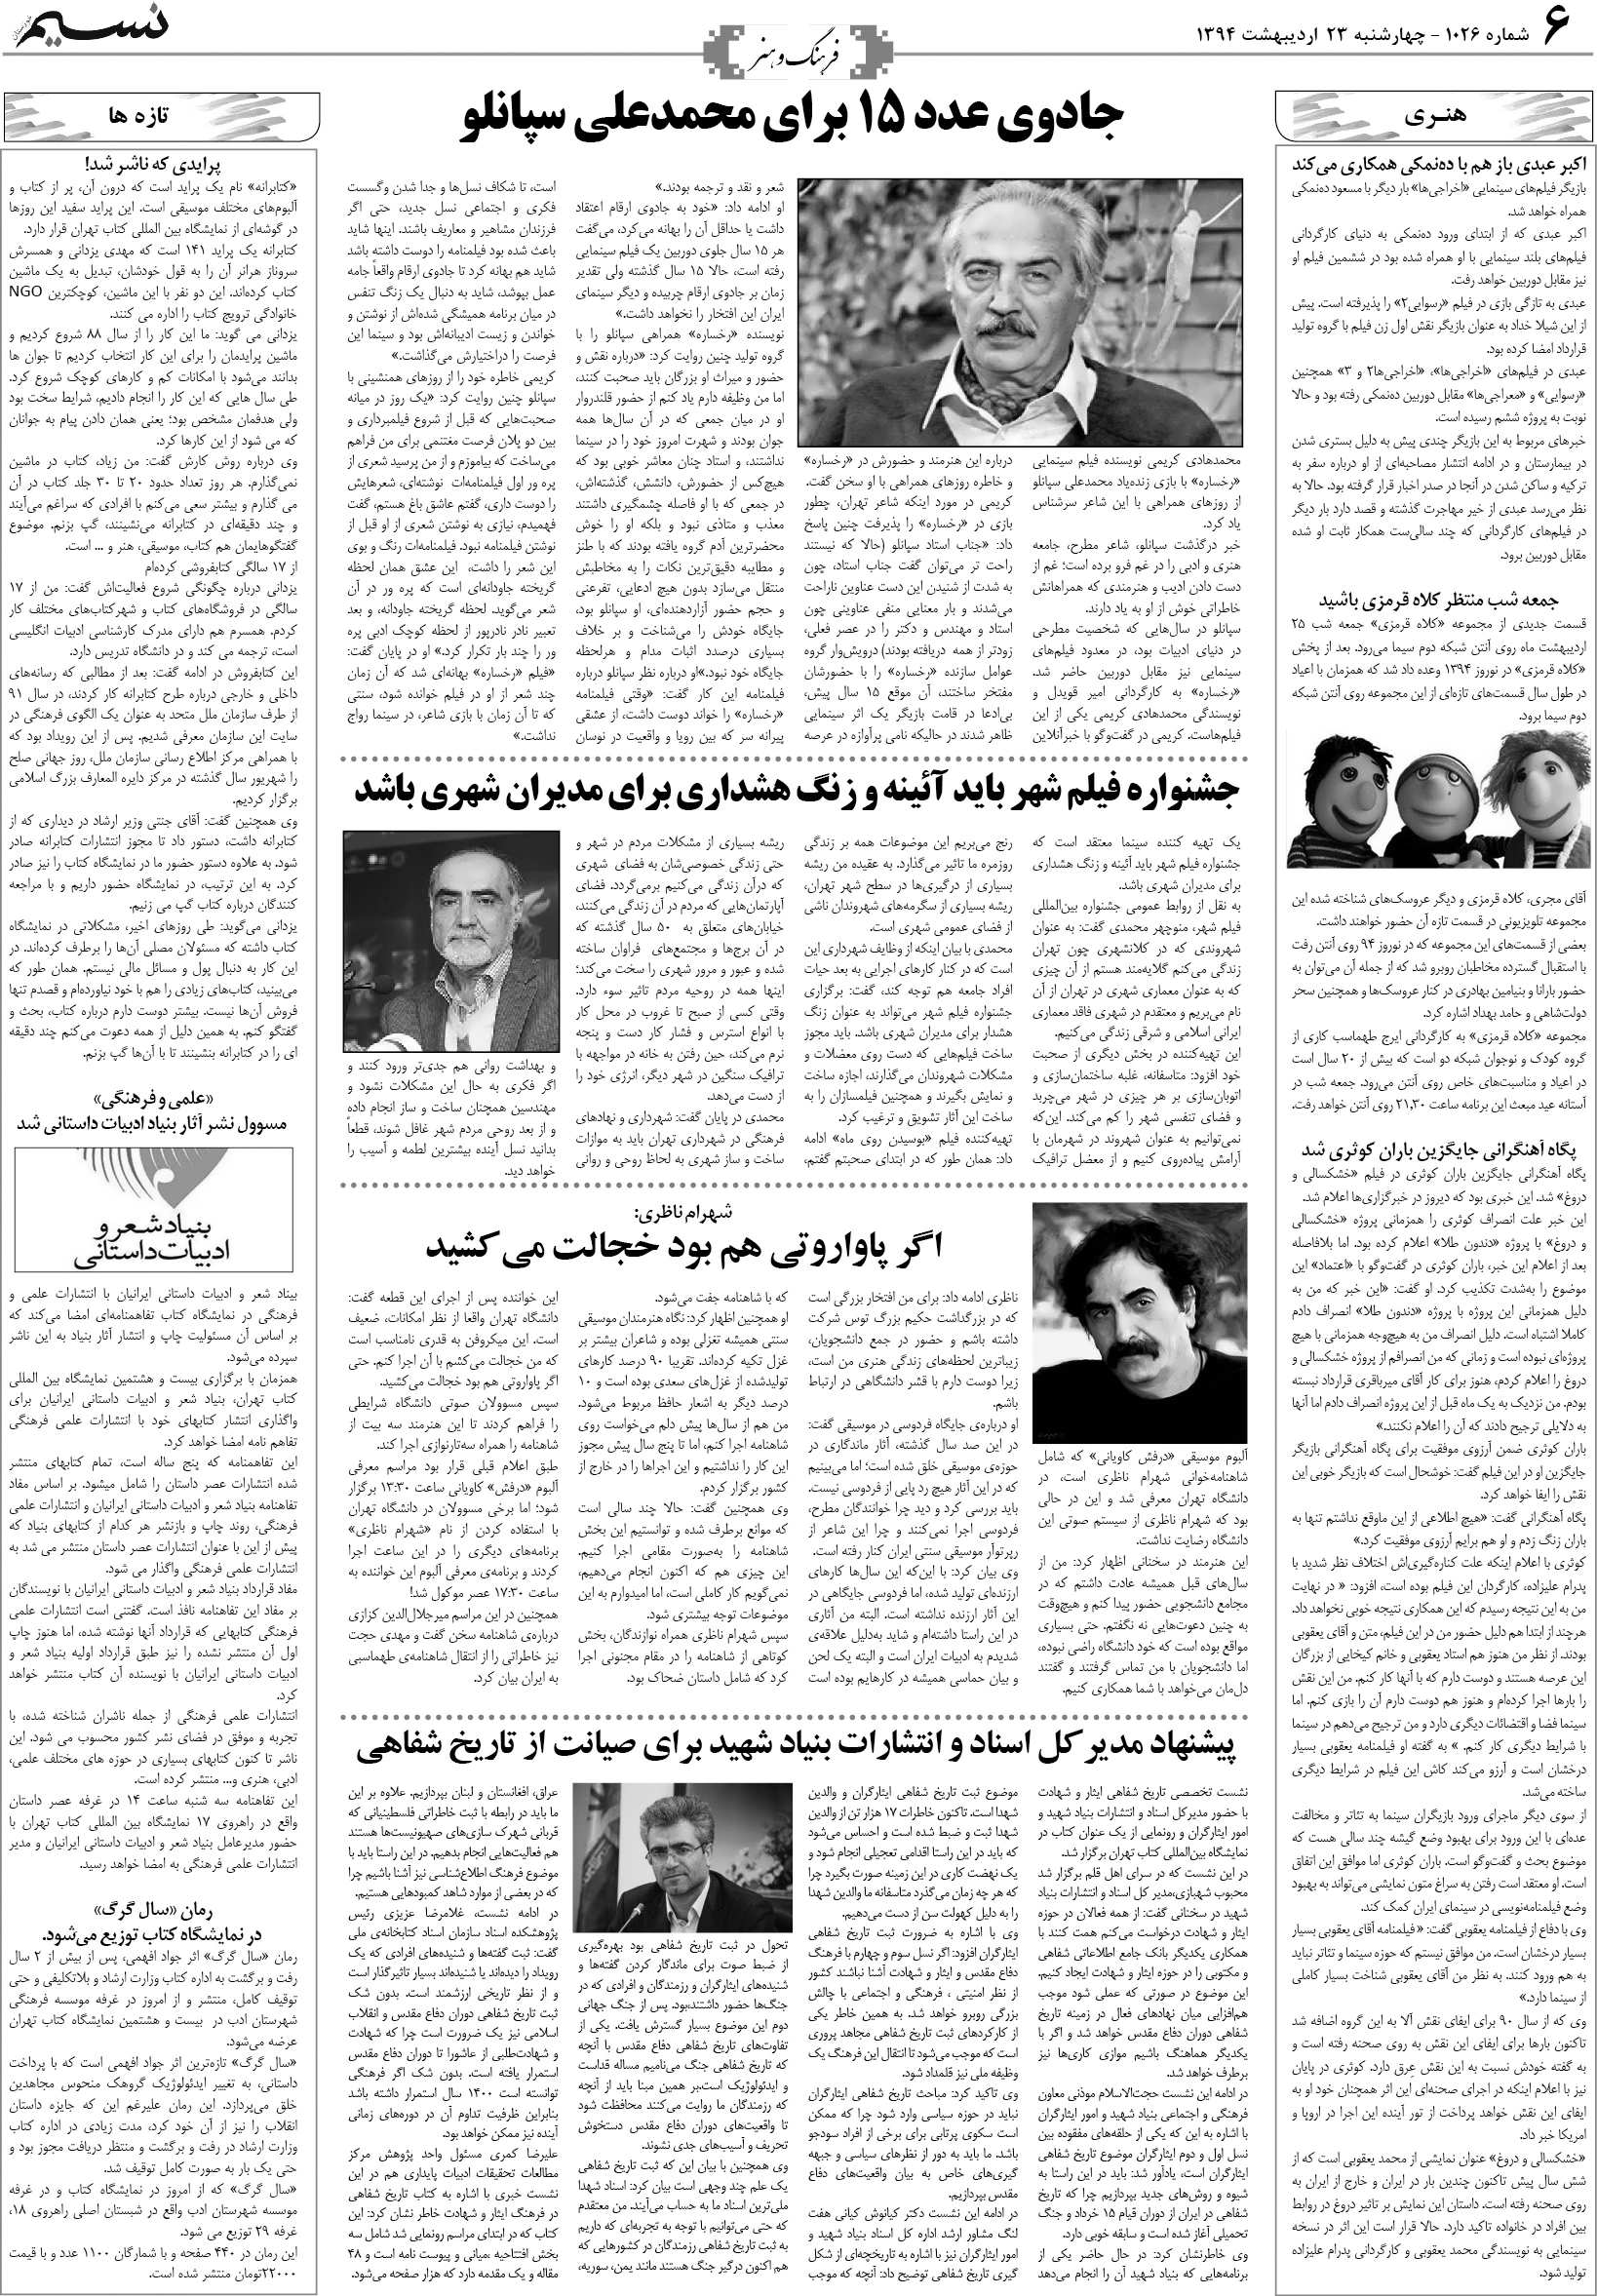 صفحه فرهنگ و هنر روزنامه نسیم شماره 1026